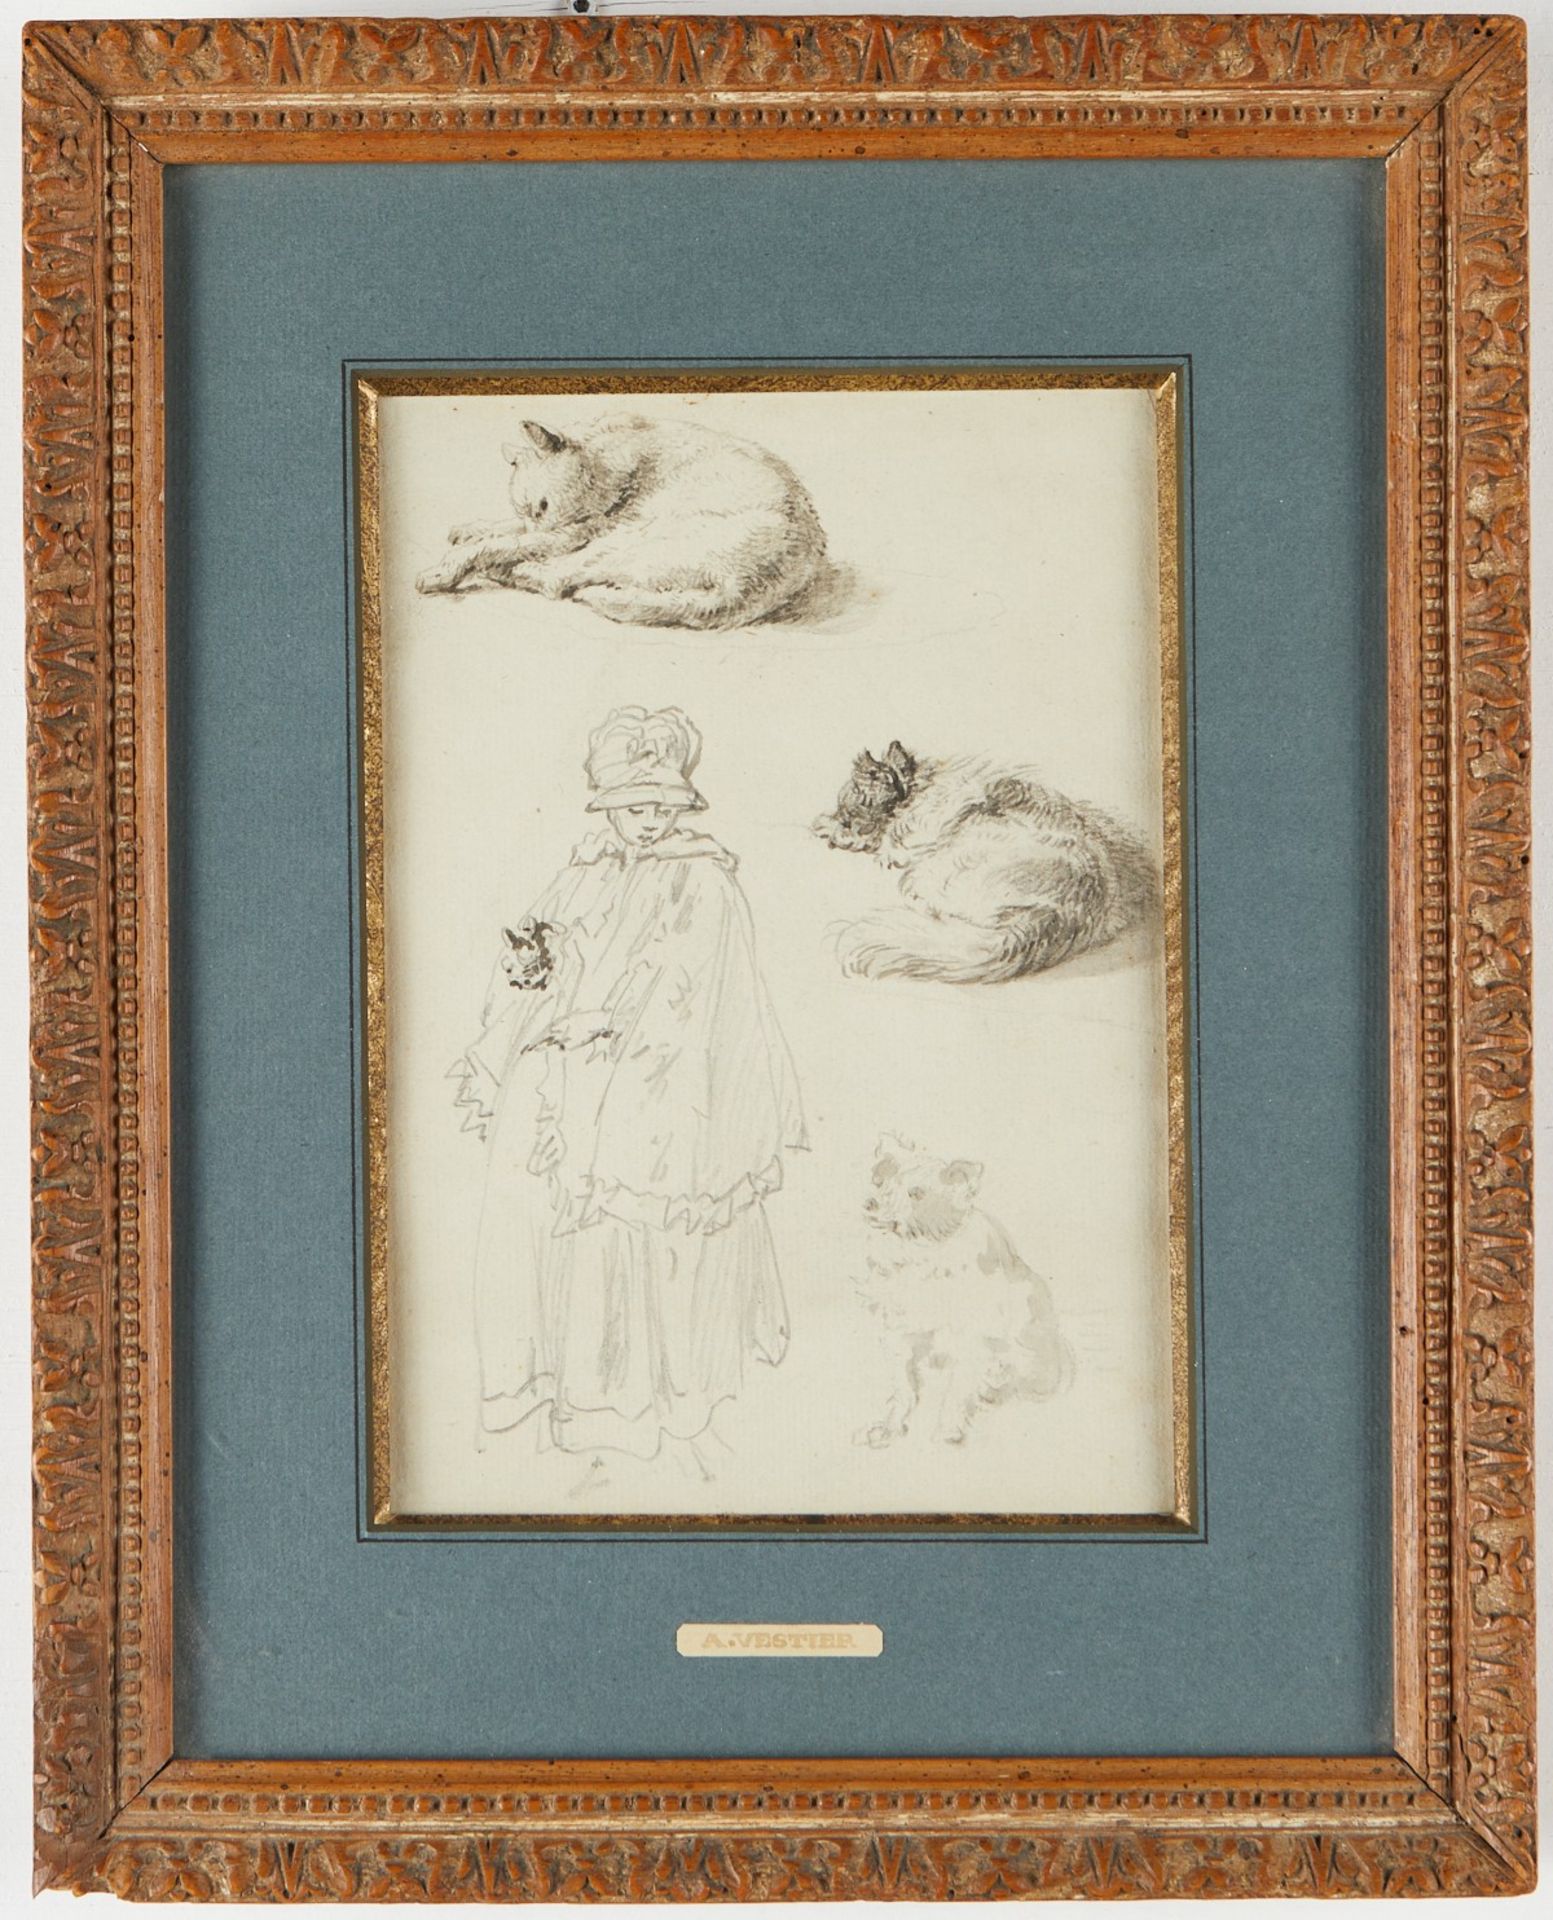 Antoine Vestier Studies Cats & Child - Image 2 of 5